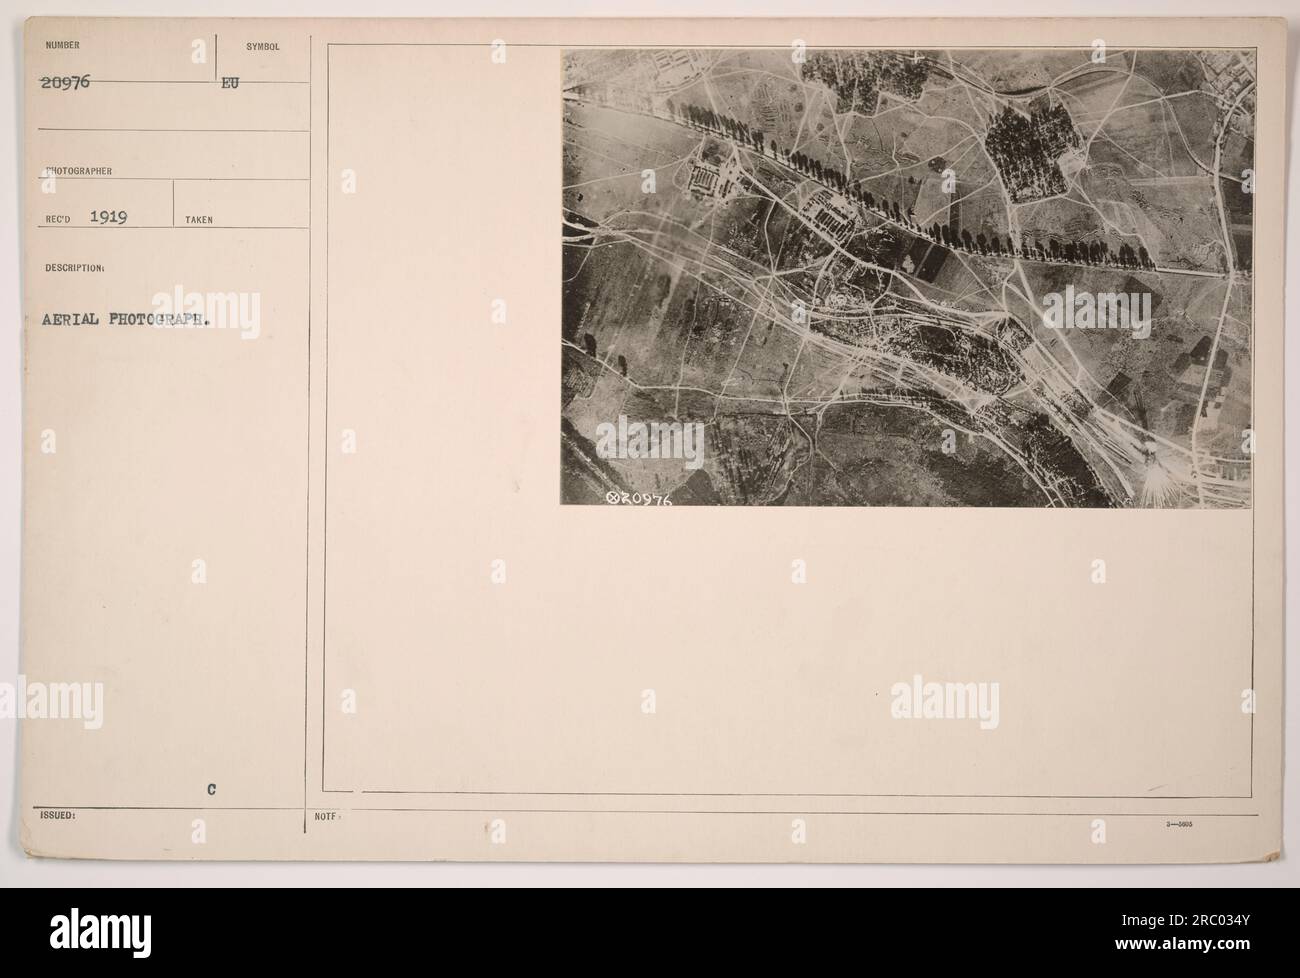 Dieses Luftfoto, das der Fotograf Sunber im Jahr 1919 aufgenommen hat, zeigt einen klaren Blick auf die Landschaft. Das Bild ist Teil der Fotografien der Sammlung amerikanischer Militäraktivitäten aus dem Ersten Weltkrieg. Es wurde mit dem Code 111-SC-20976 gekennzeichnet und trägt das offizielle EU-Zeichen der Notifizierung 20976. Stockfoto